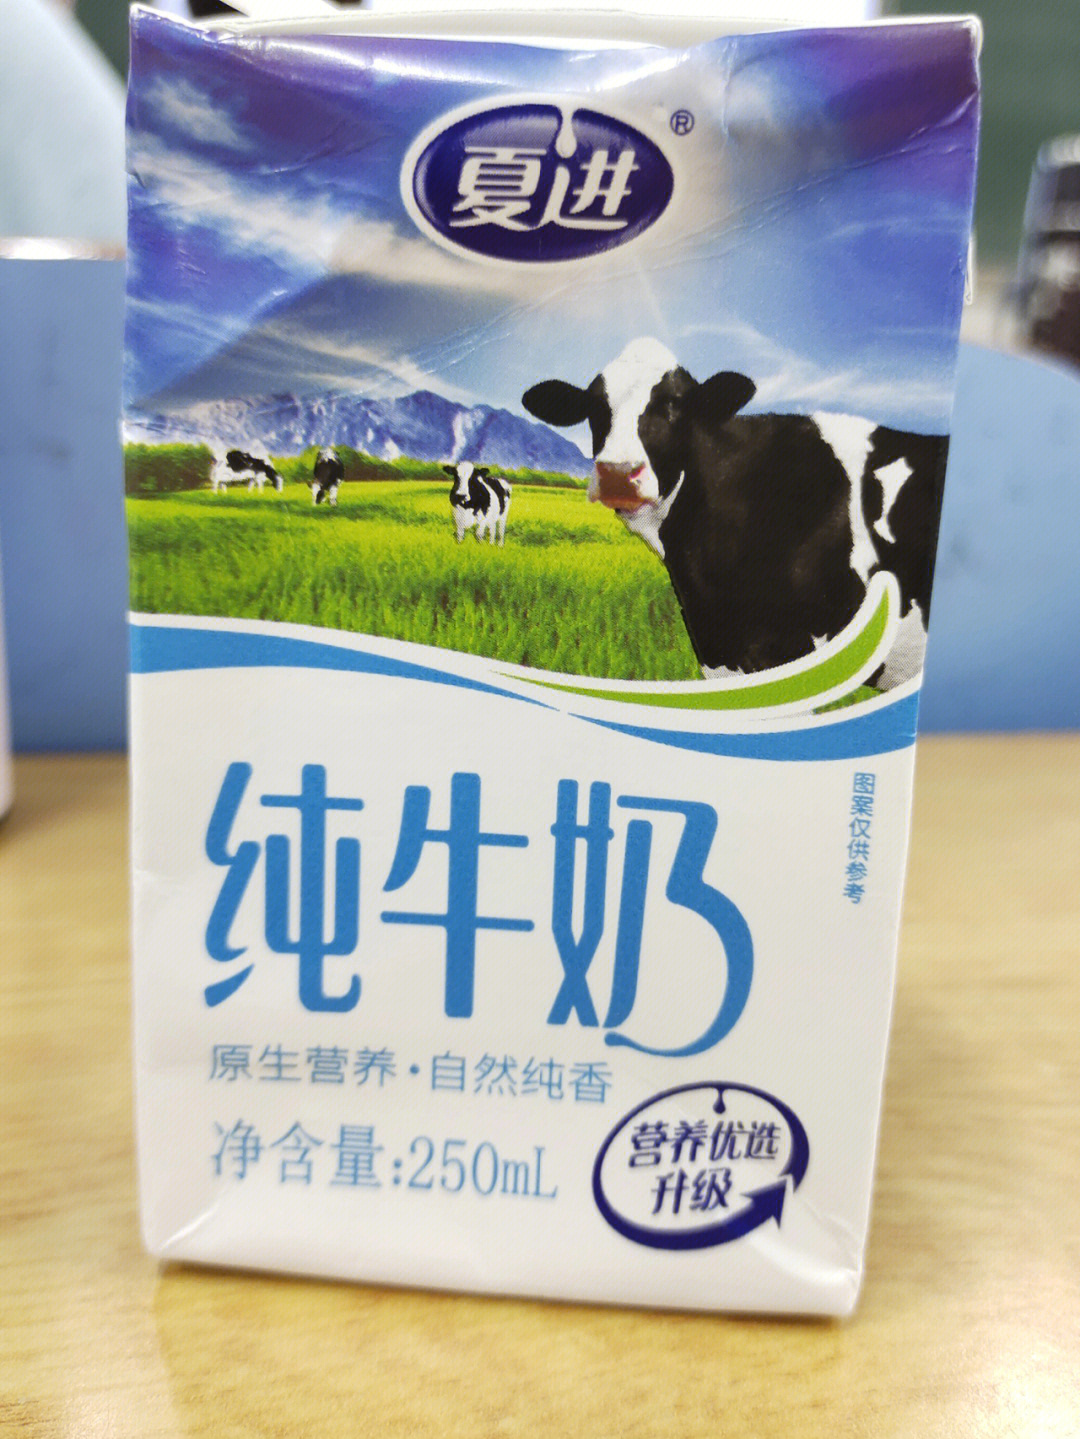 夏进纯牛奶227克×16包图片